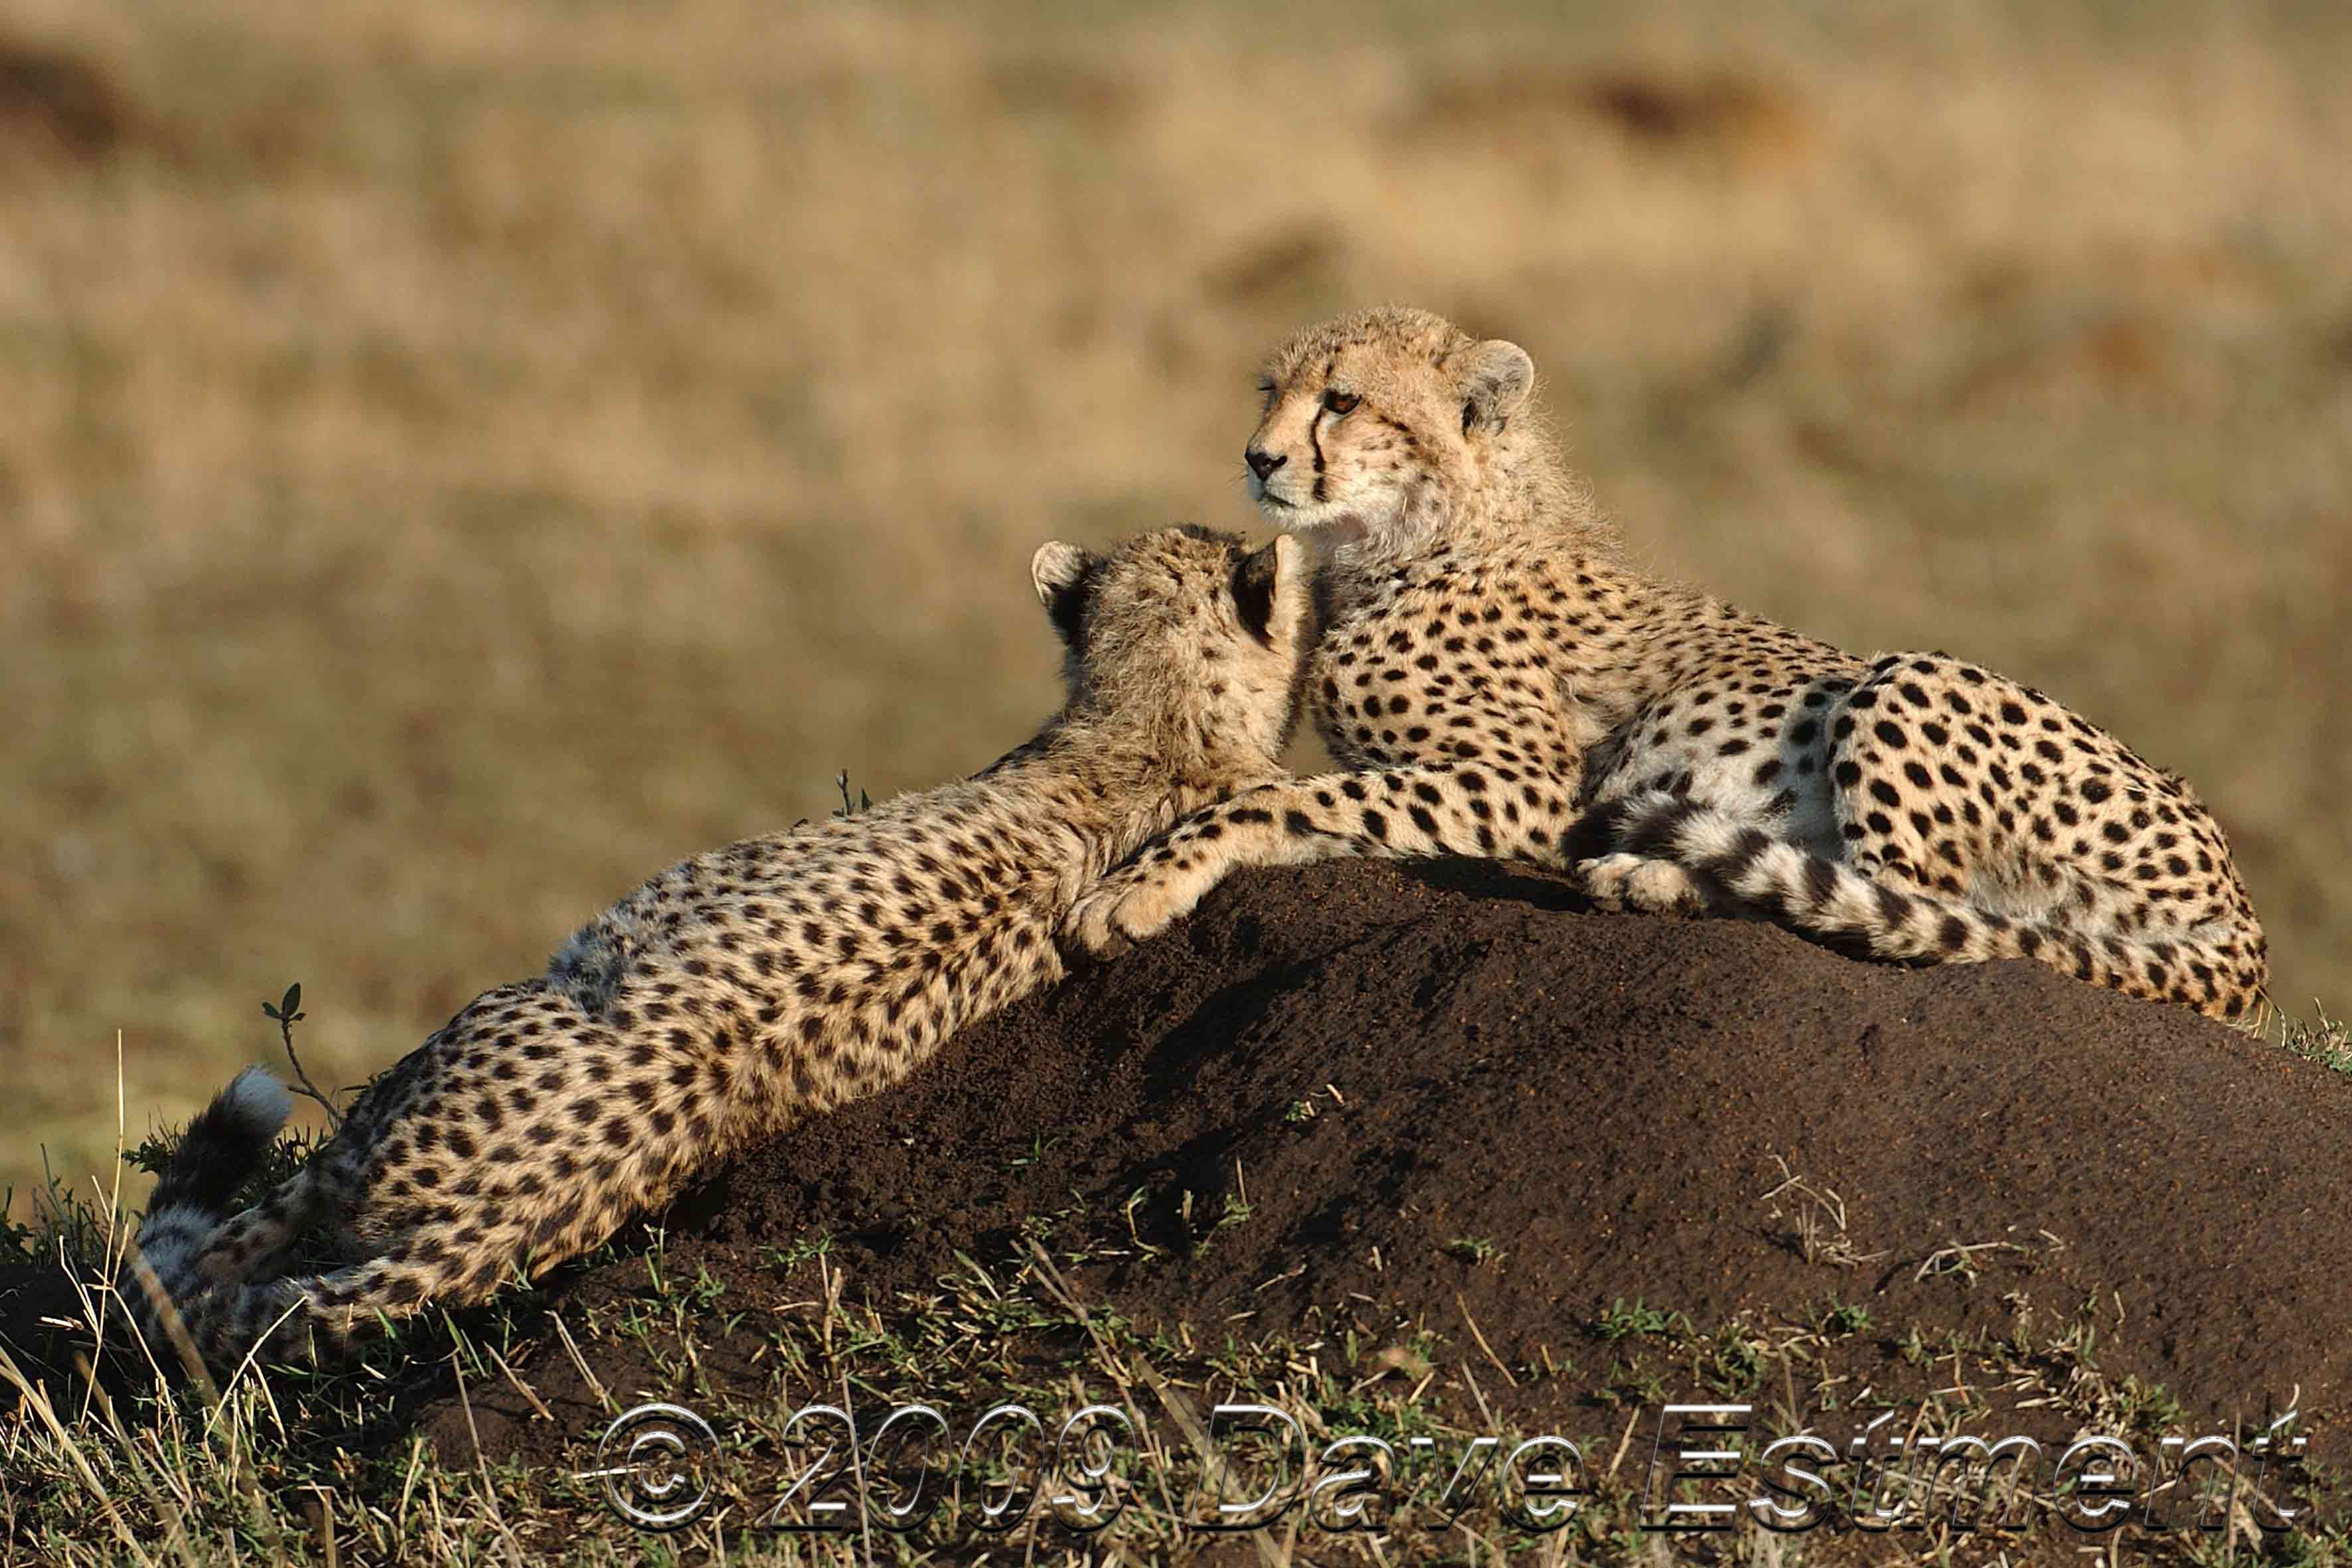 nature, animals, cheetahs, wild cats - desktop wallpaper